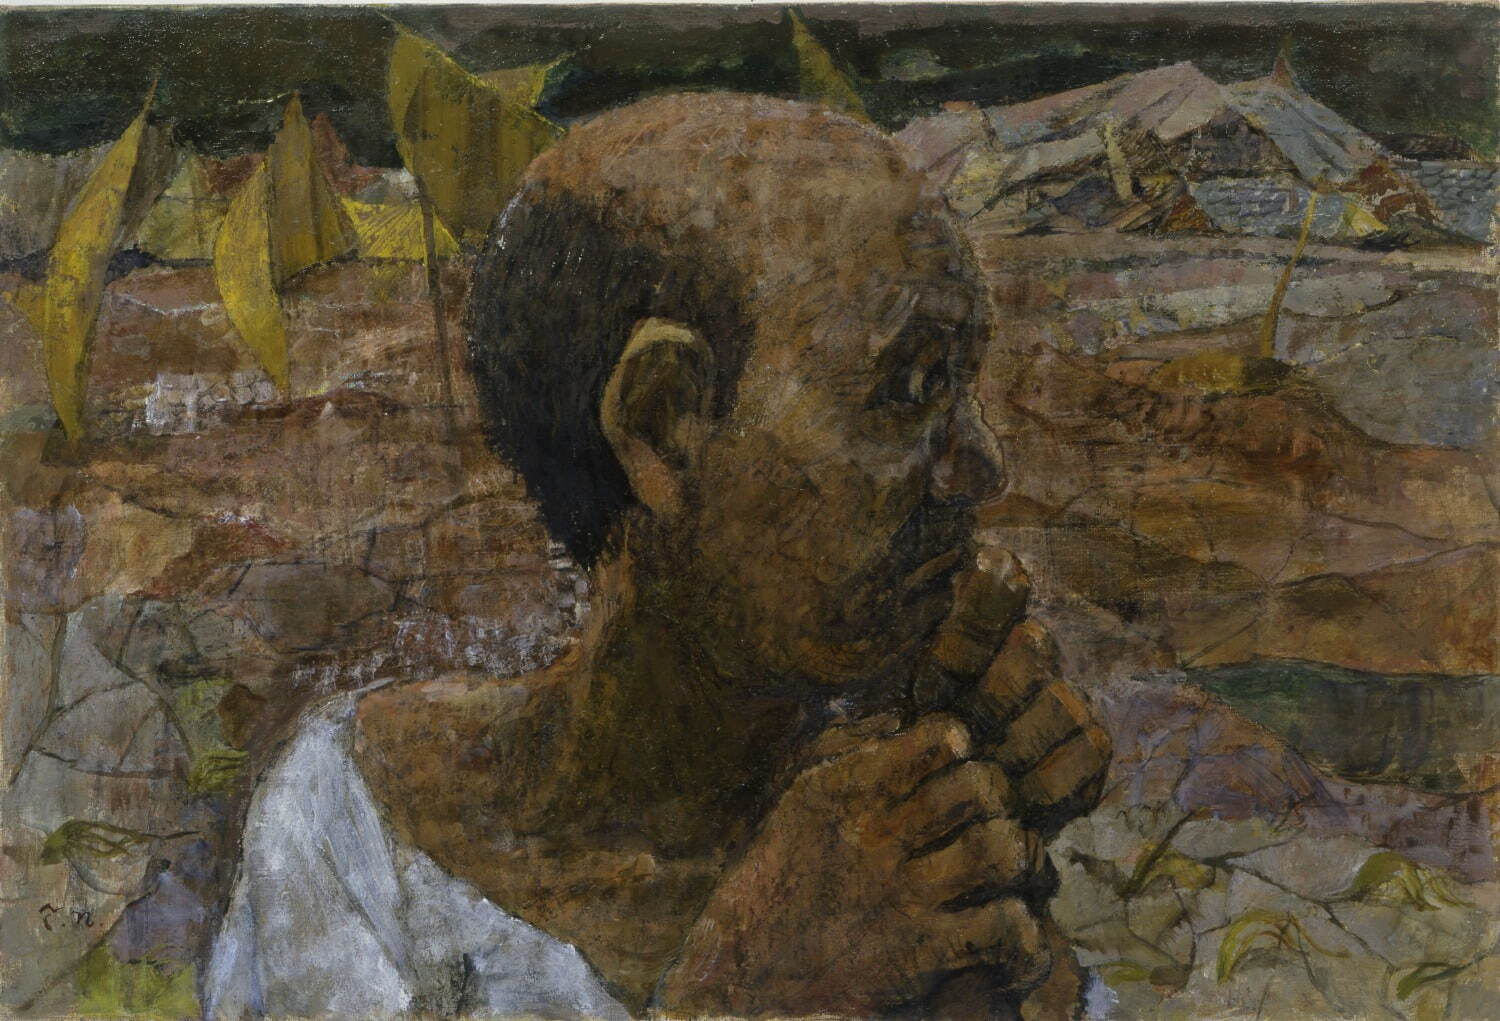 中谷 泰《農民の顔》1954年 三重県立美術館蔵